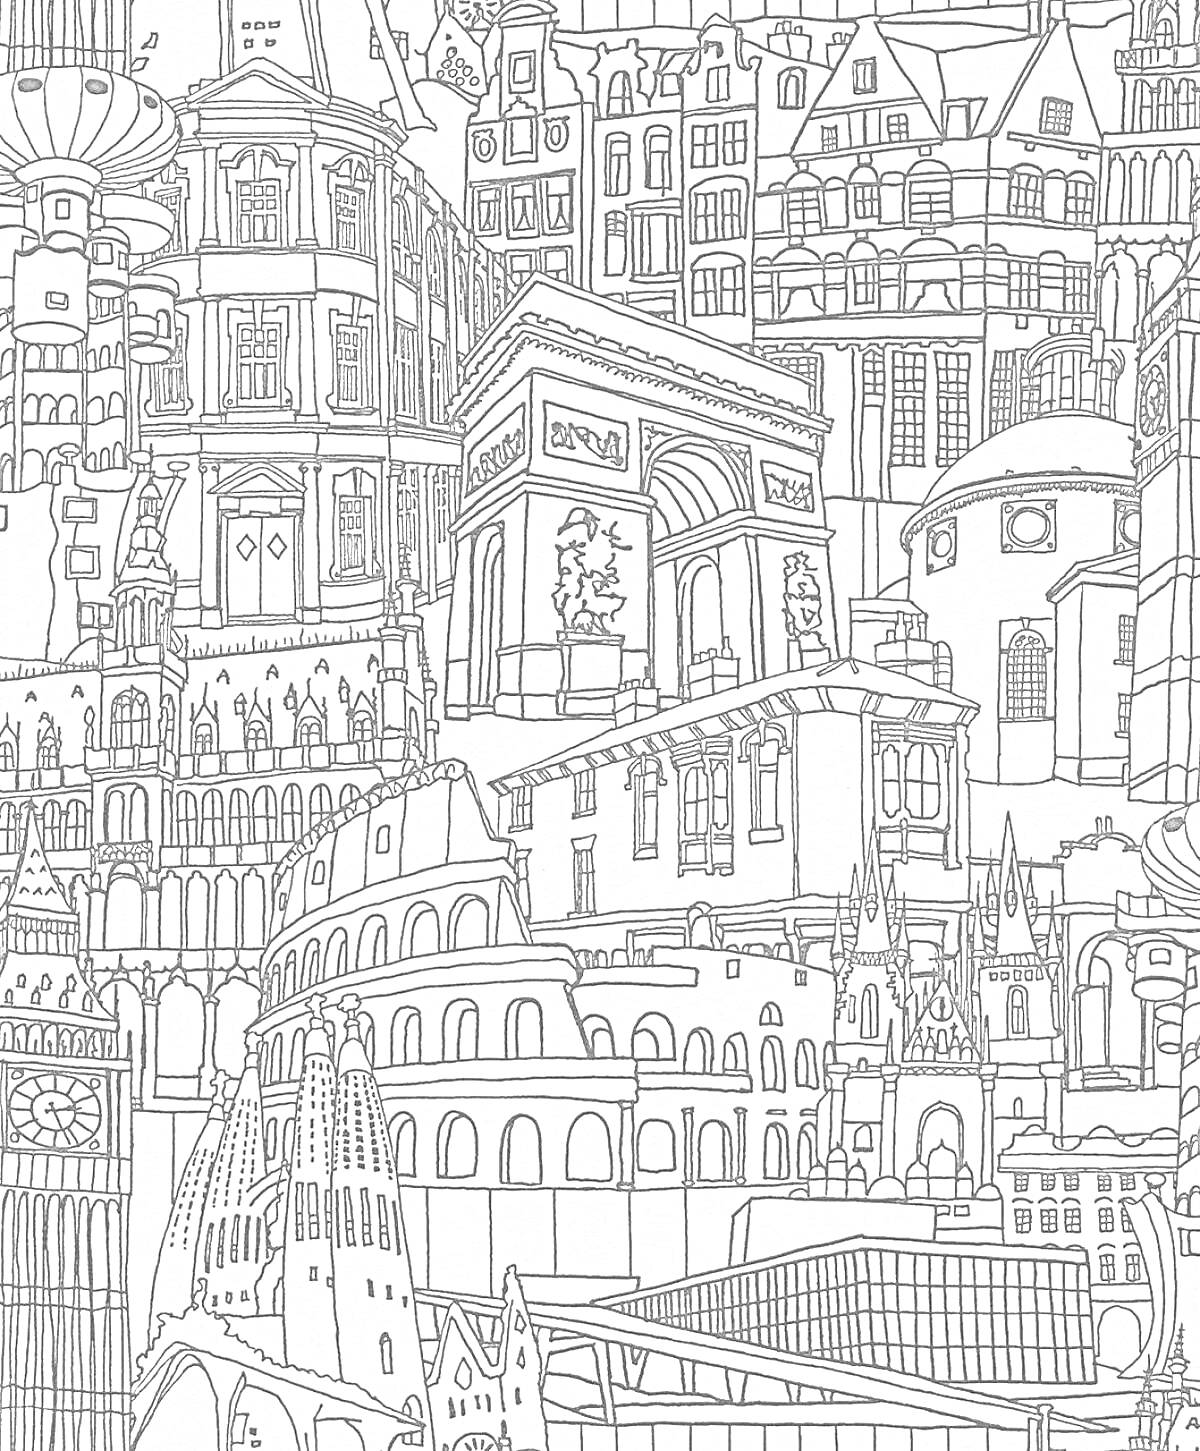 Раскраска Коллаж мировых архитектурных памятников, включающий Римский Колизей, Триумфальную арку, Эйфелеву башню, здания в стиле Барокко и Готики